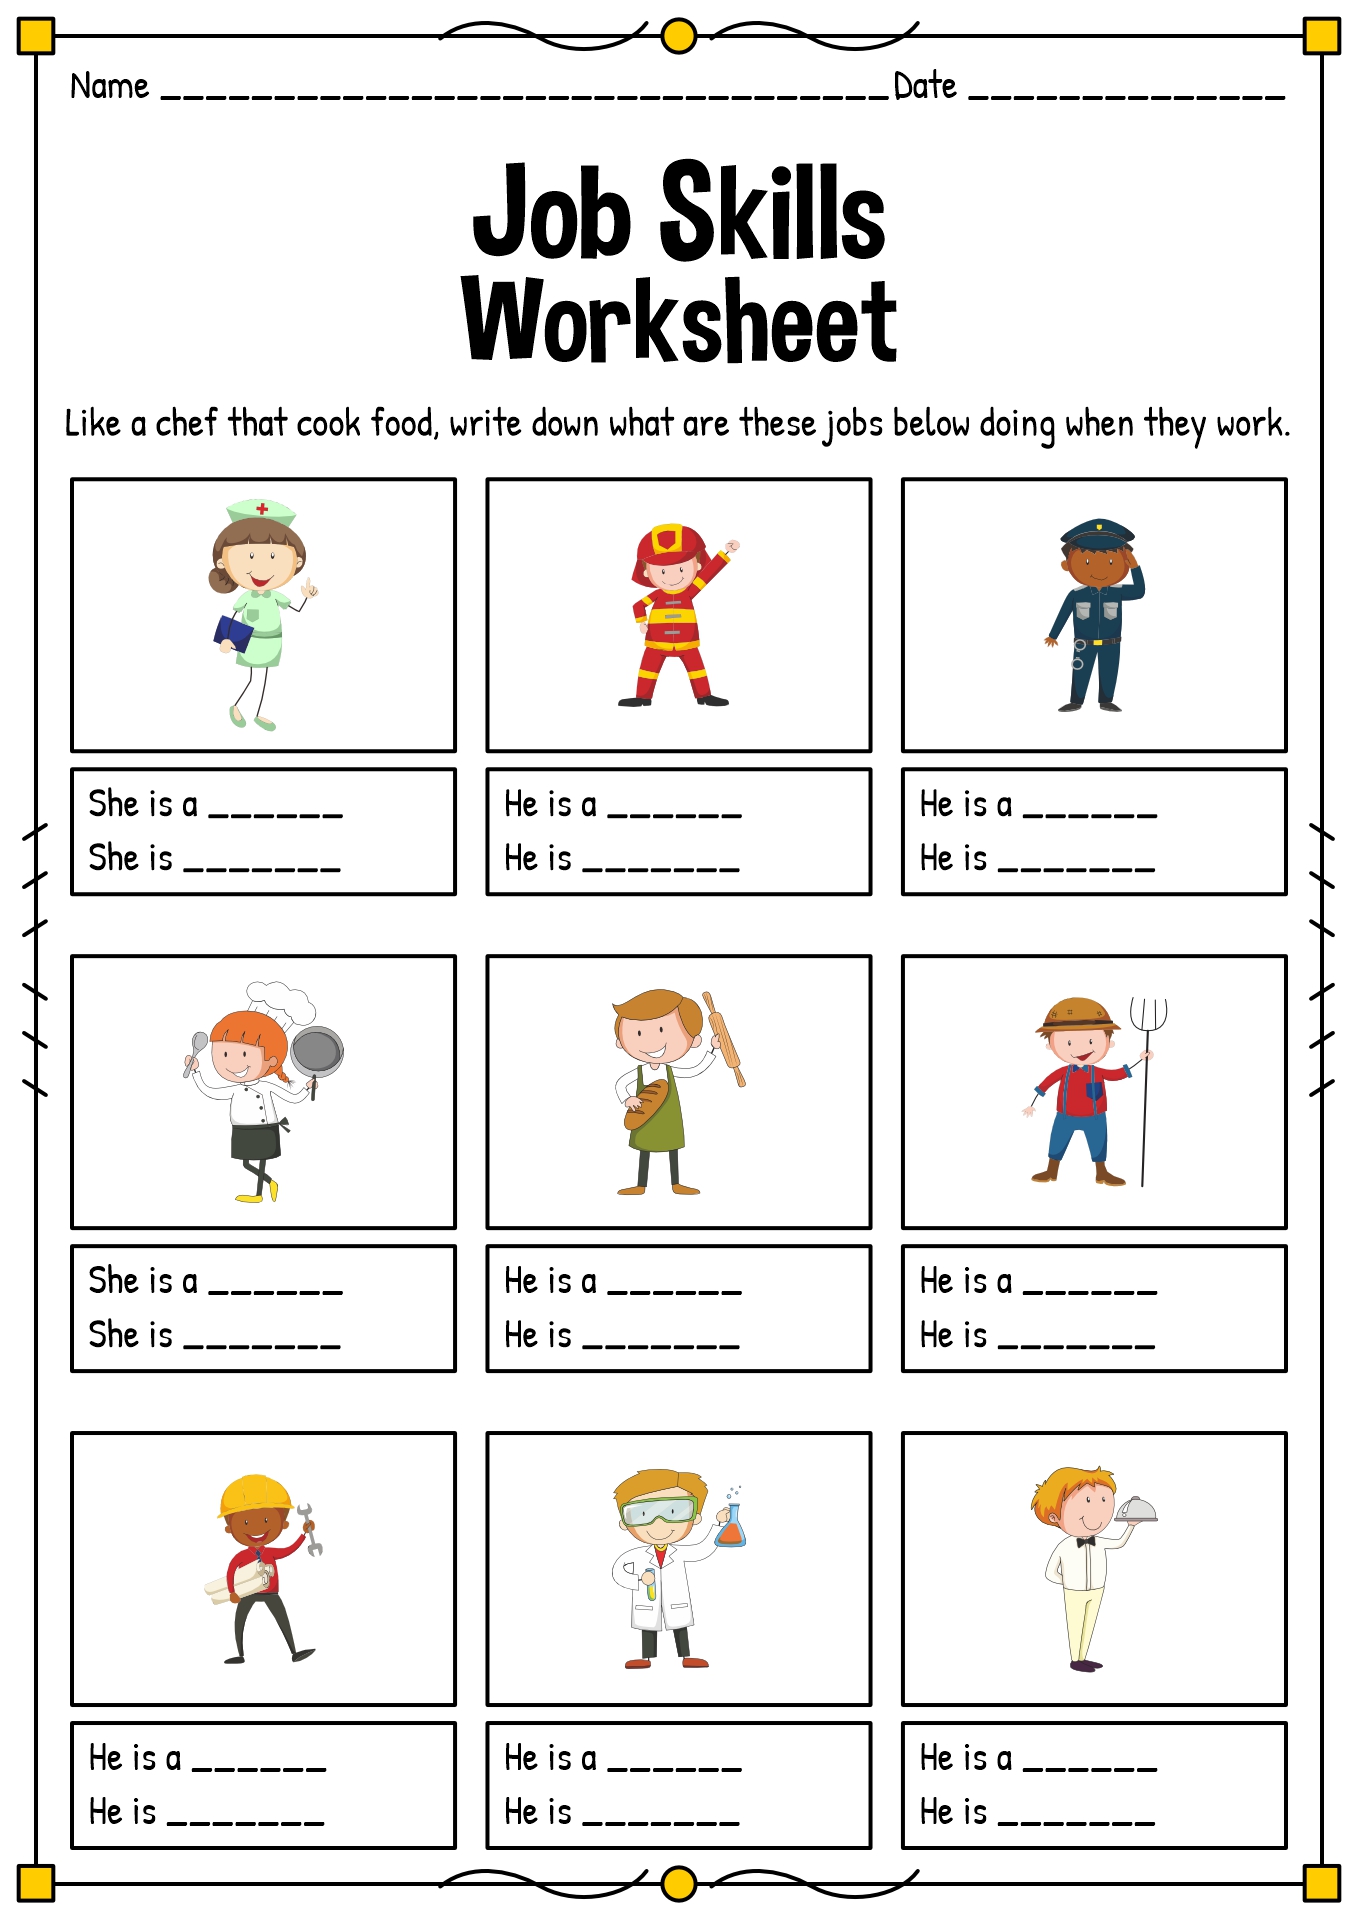 Job-Skills Worksheets for Kids